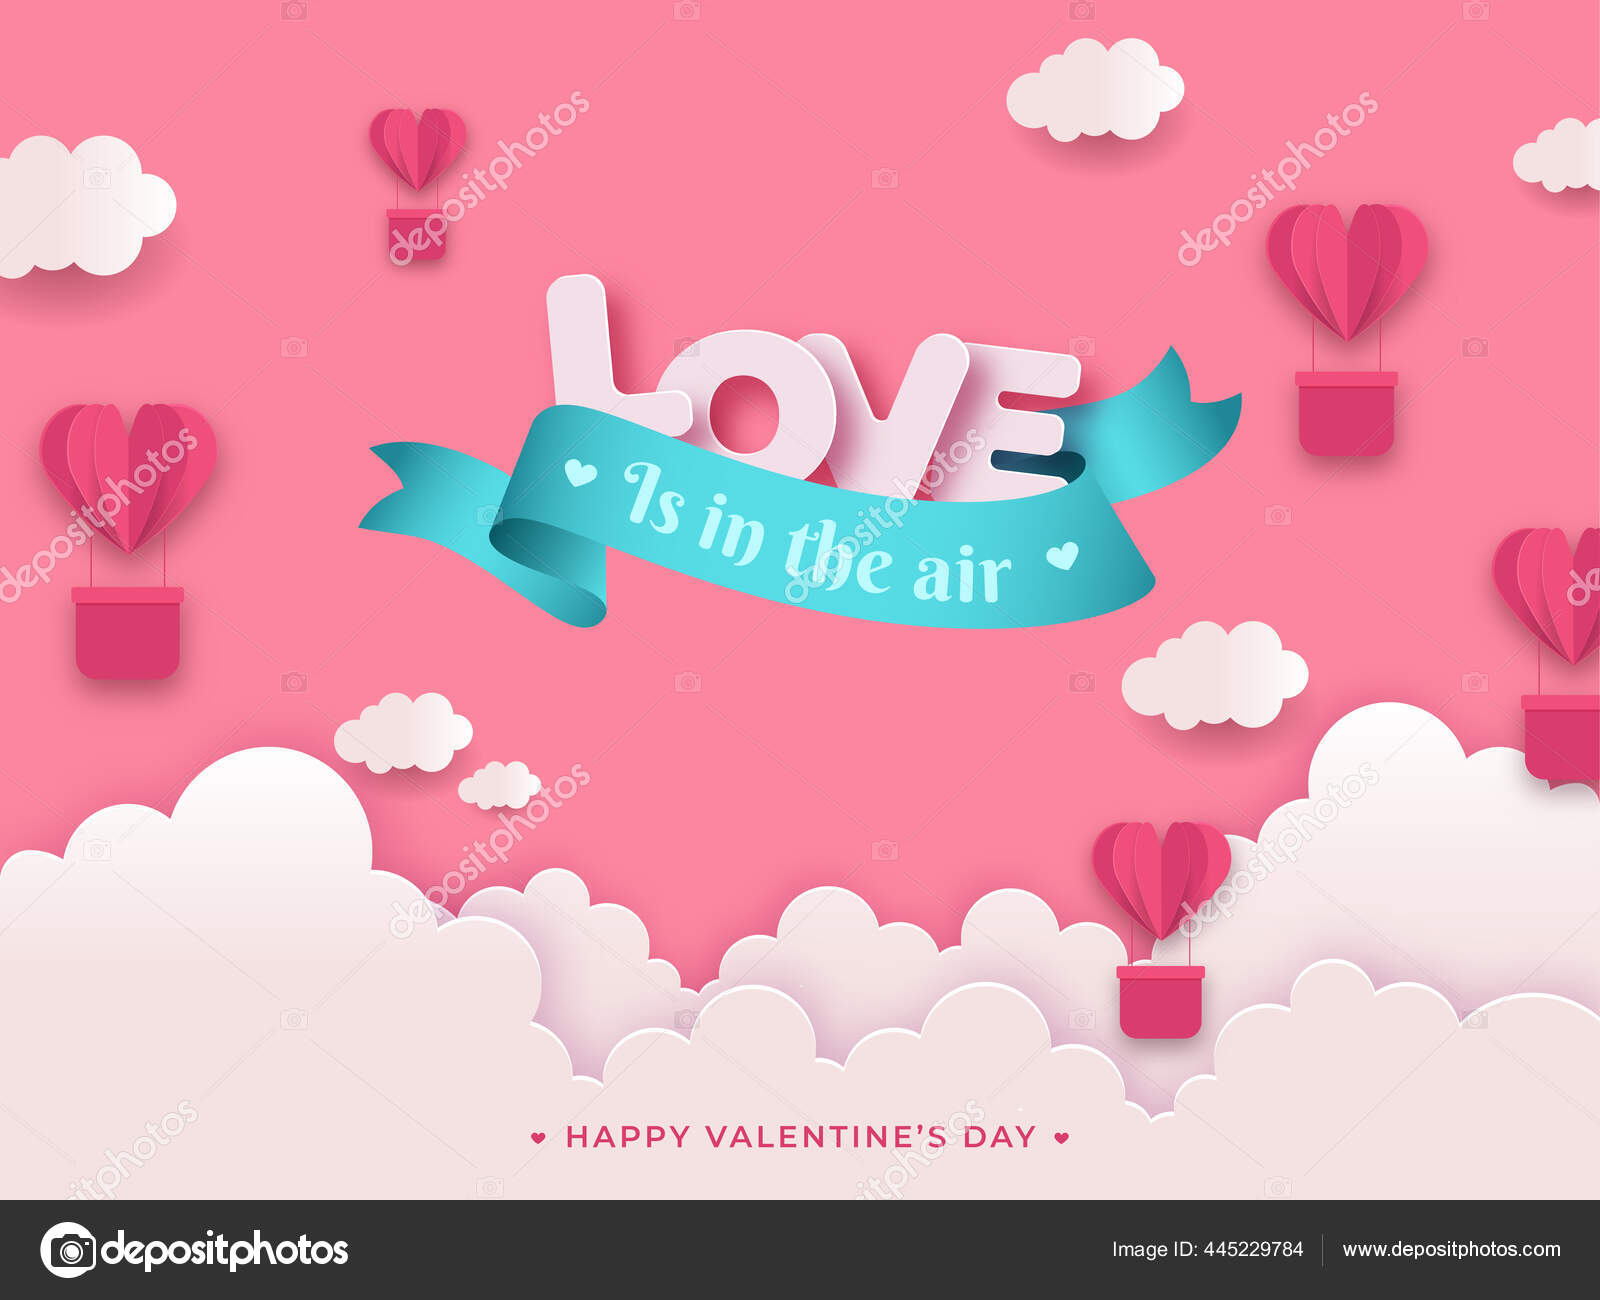 Love Air Message Text Paper Cut Heart Shape Hot Air Stock Vector by  ©alliesinteract 445229784